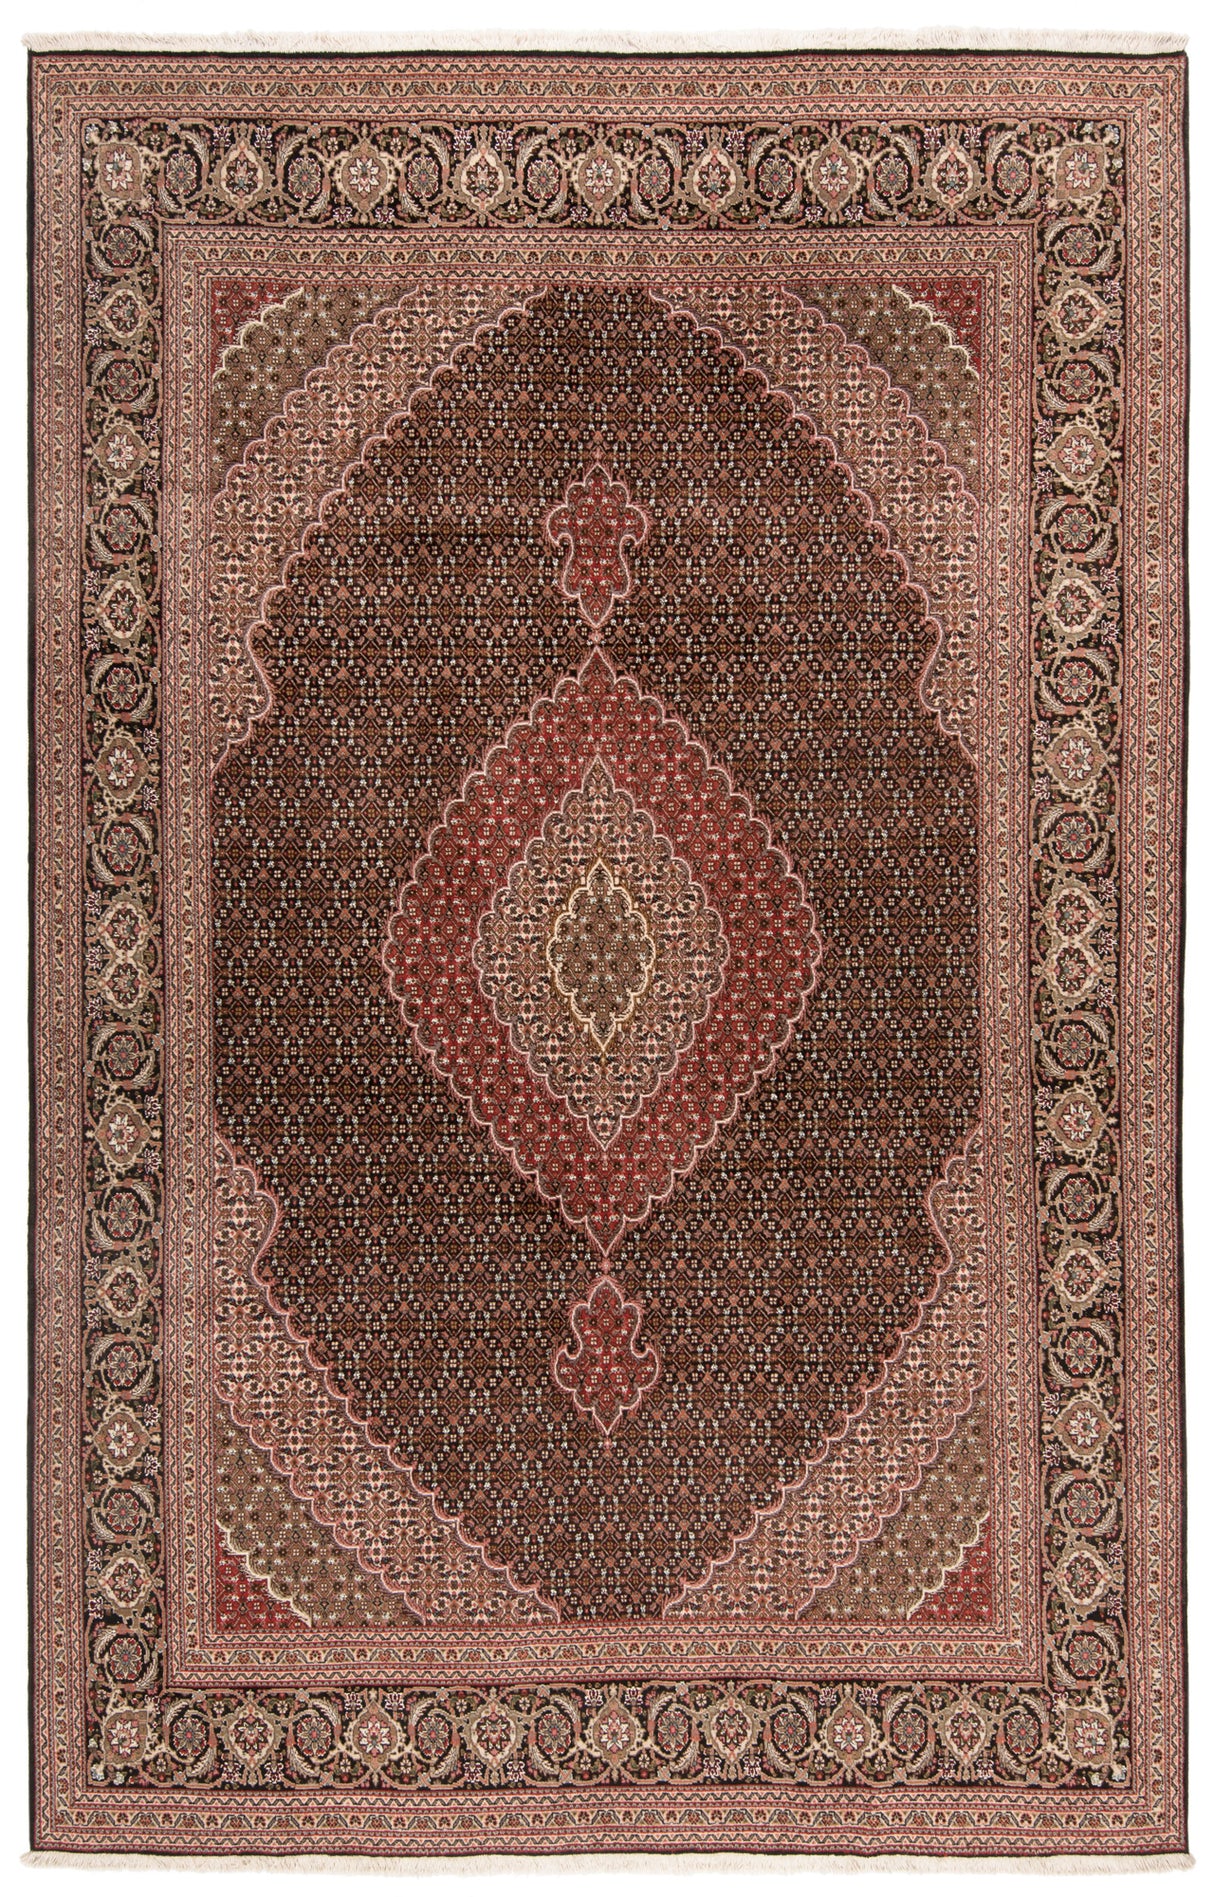 Tabriz do tapete persa 40 Raj | 303 x 195 cm